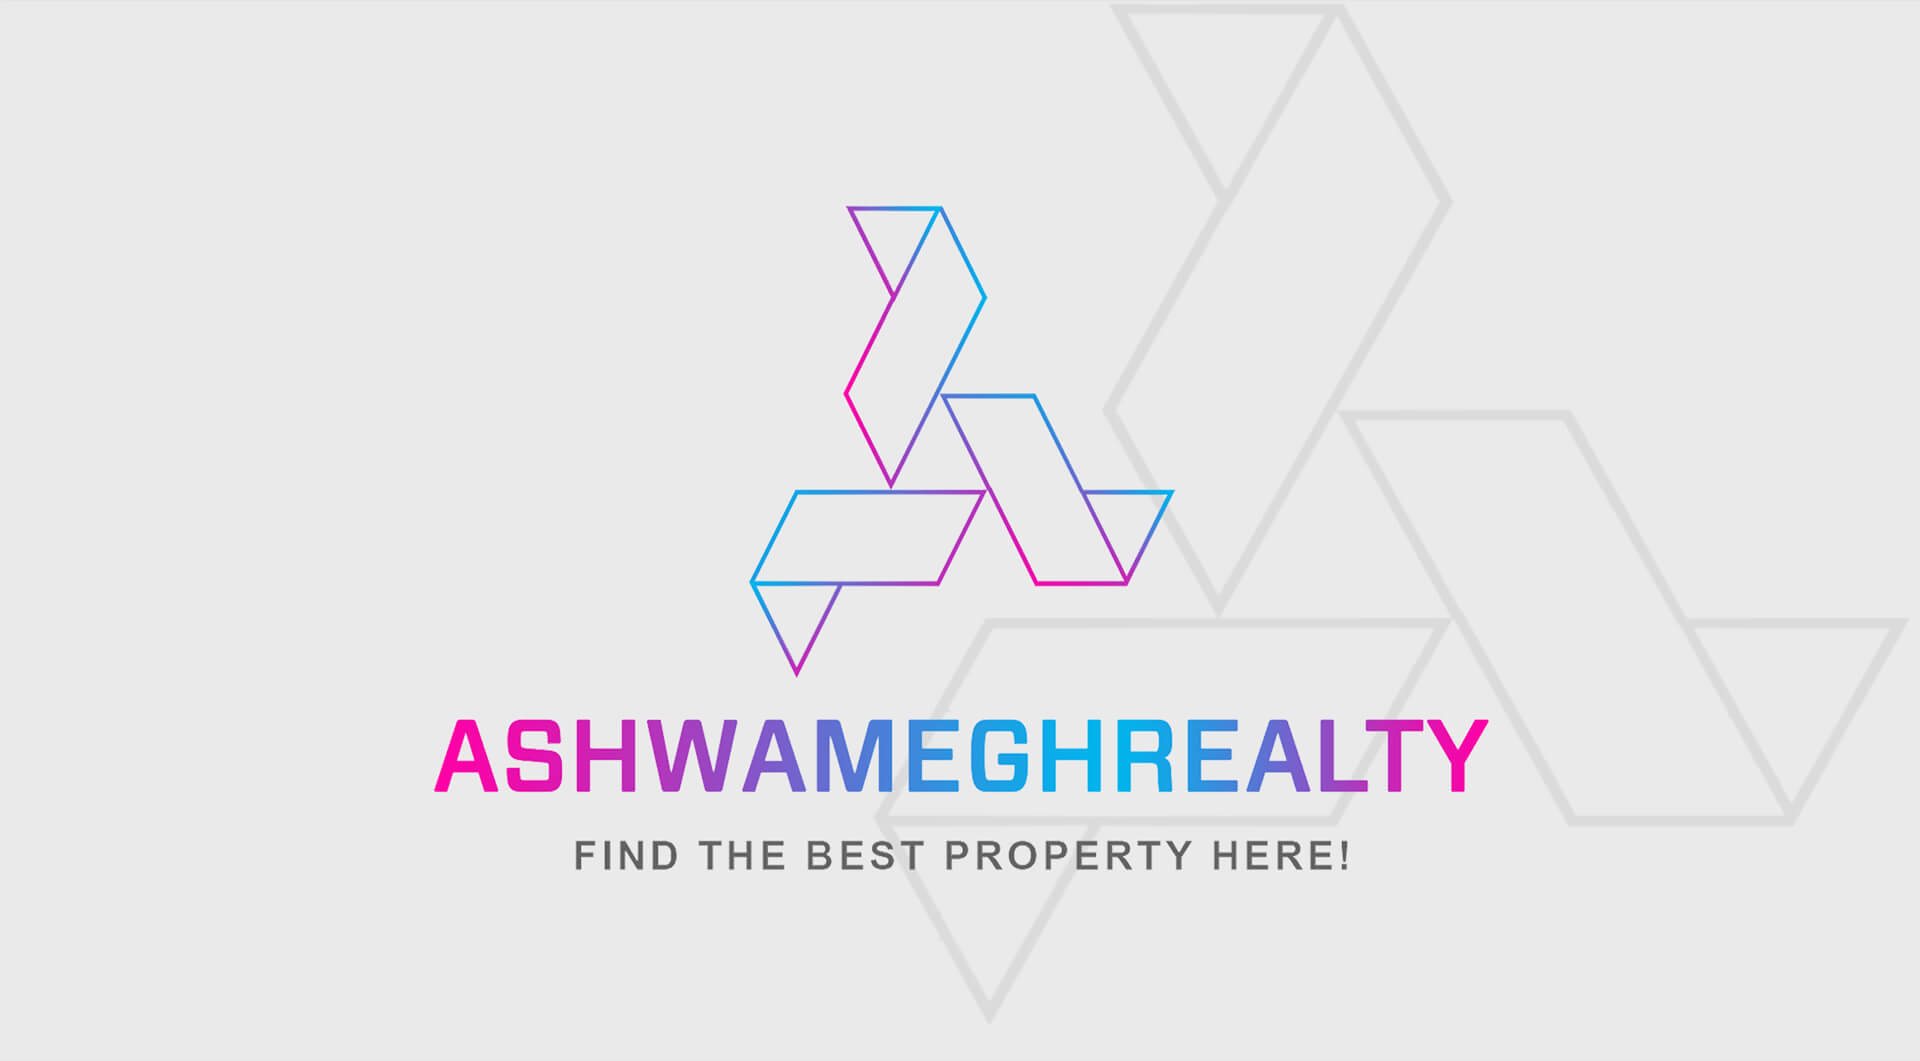 ashwamegh-realty